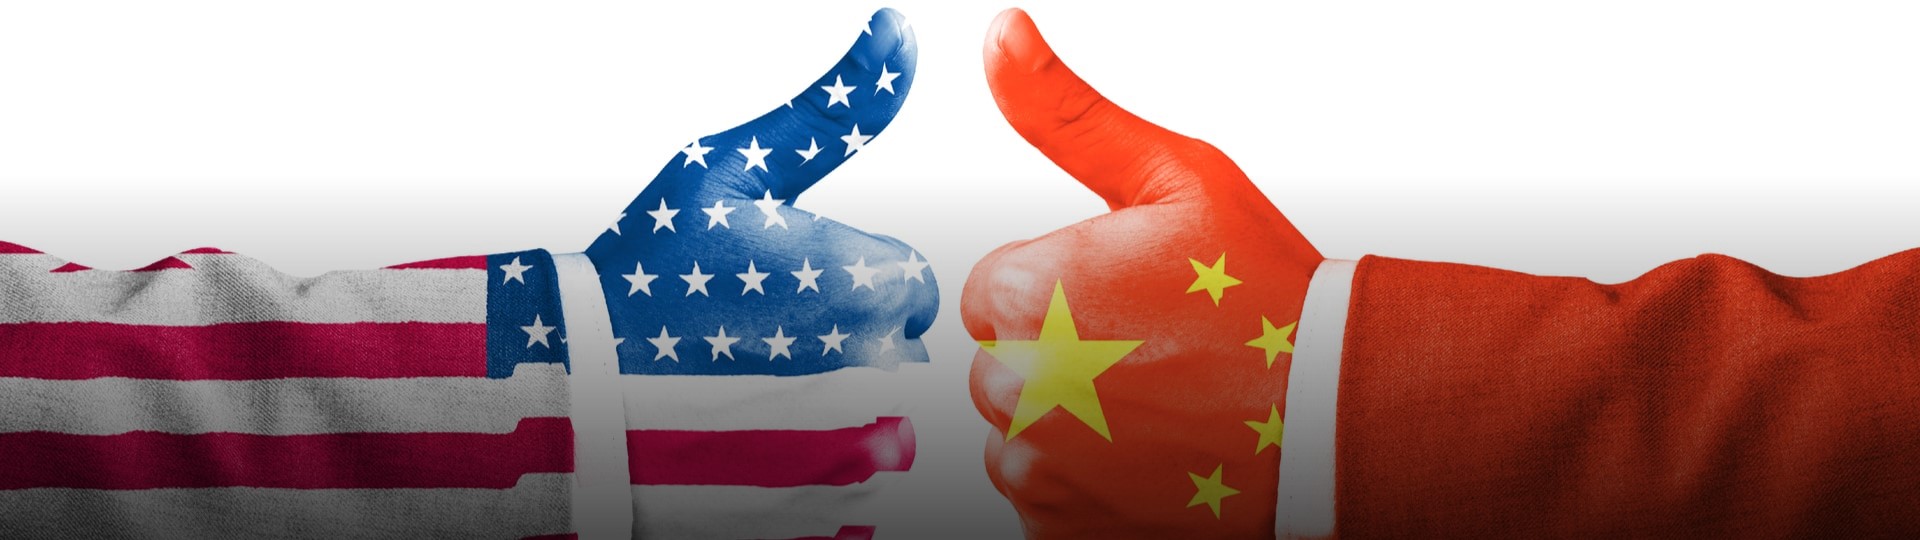 Spojené státy a Čína dosáhly pokroku v obchodních válkách